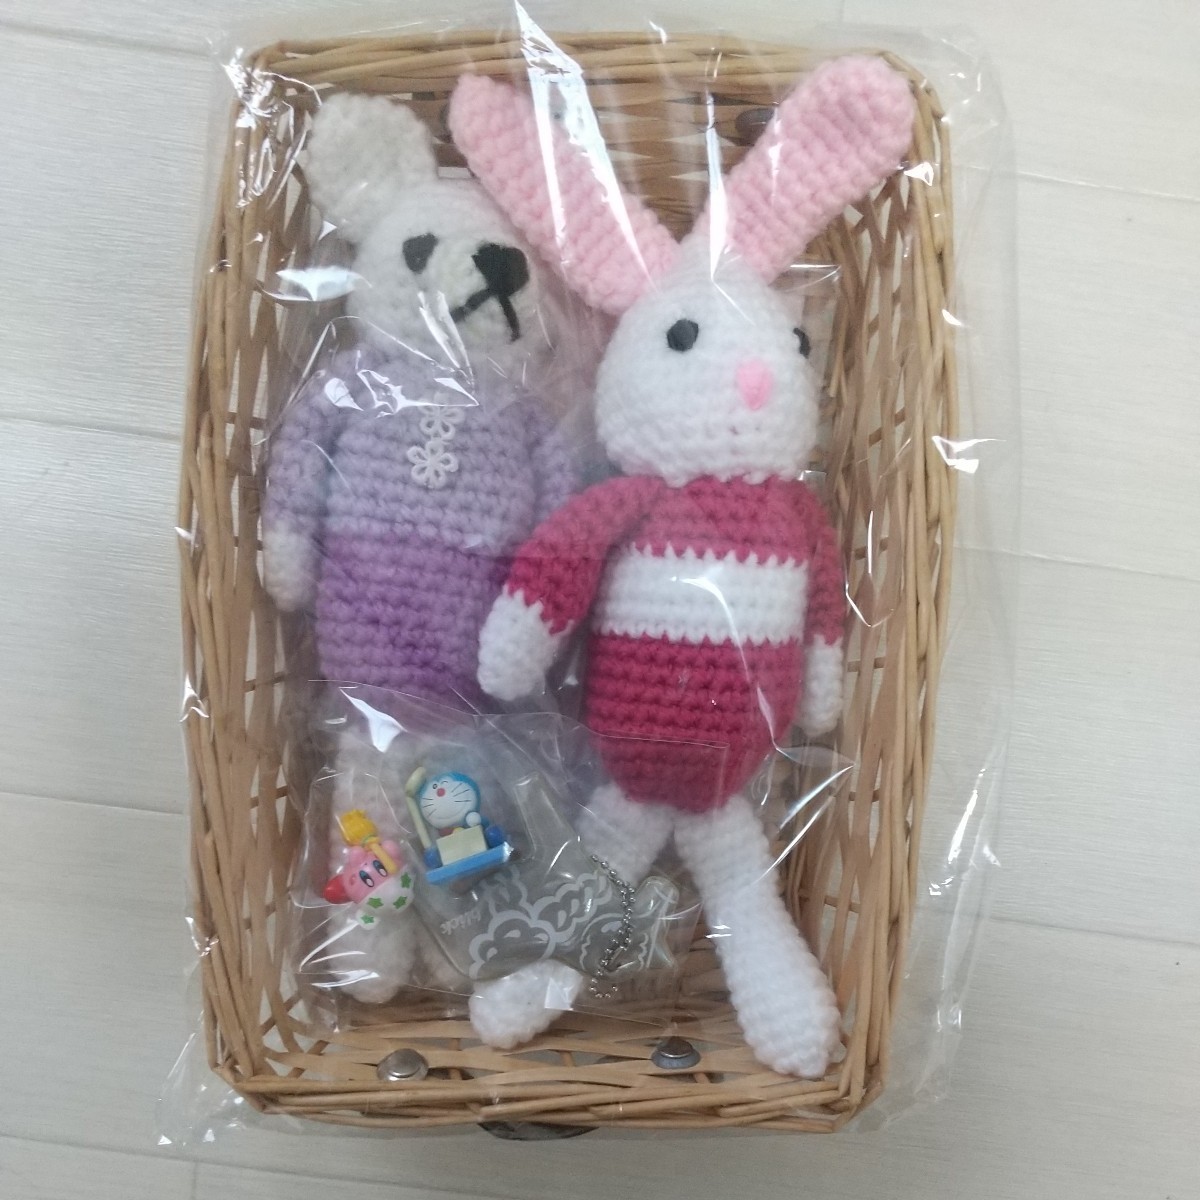 针织玩具手工兔子和熊带篮子, 玩具, 游戏, 毛绒玩具, 阿米古鲁米